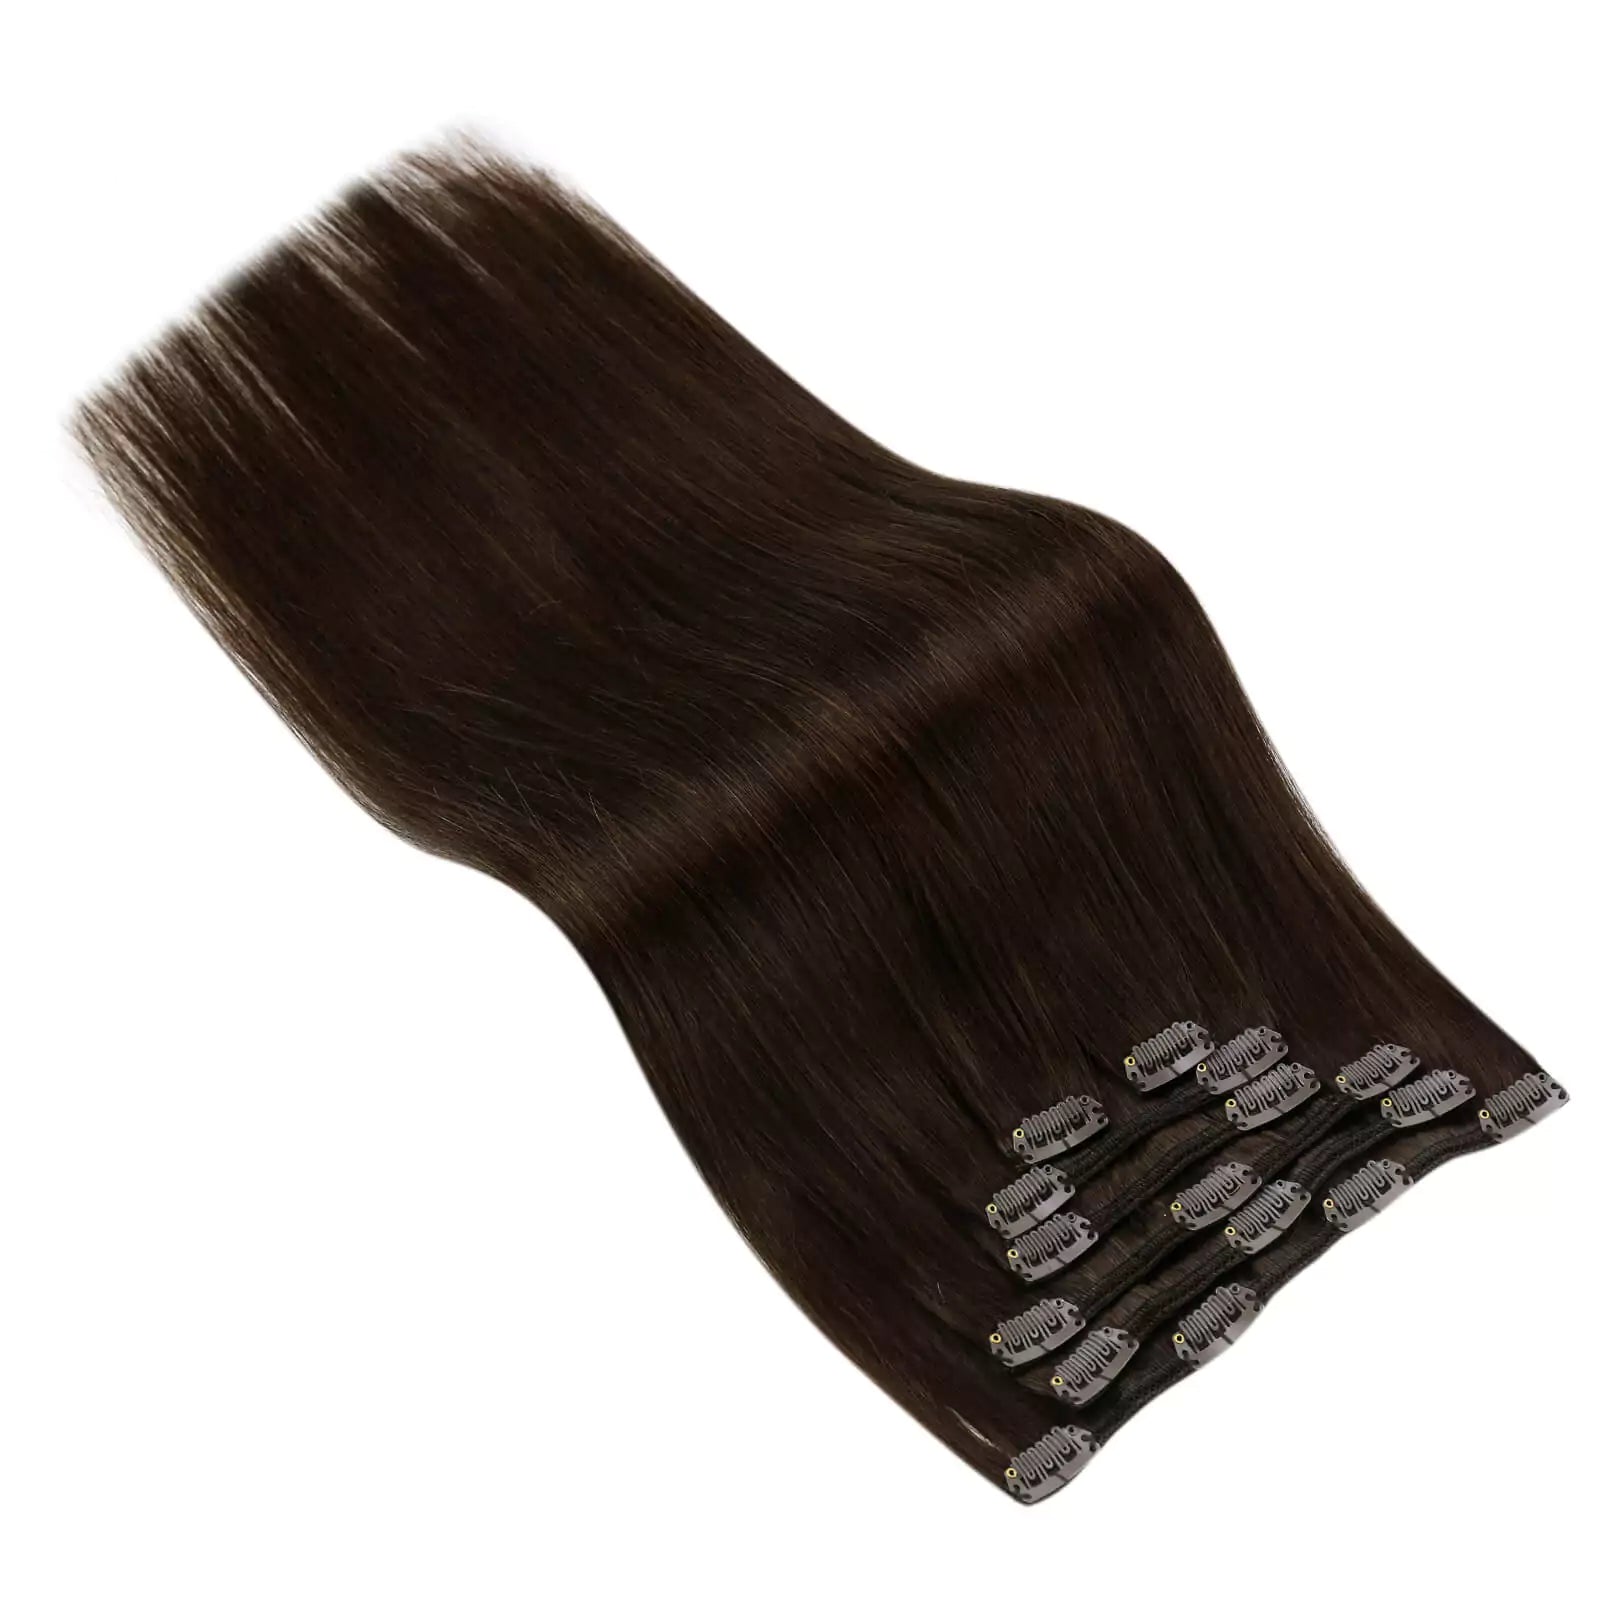 Darkest Brown 2 100% Human Hair Clip in 120g 7PCS Clip on Human Hair